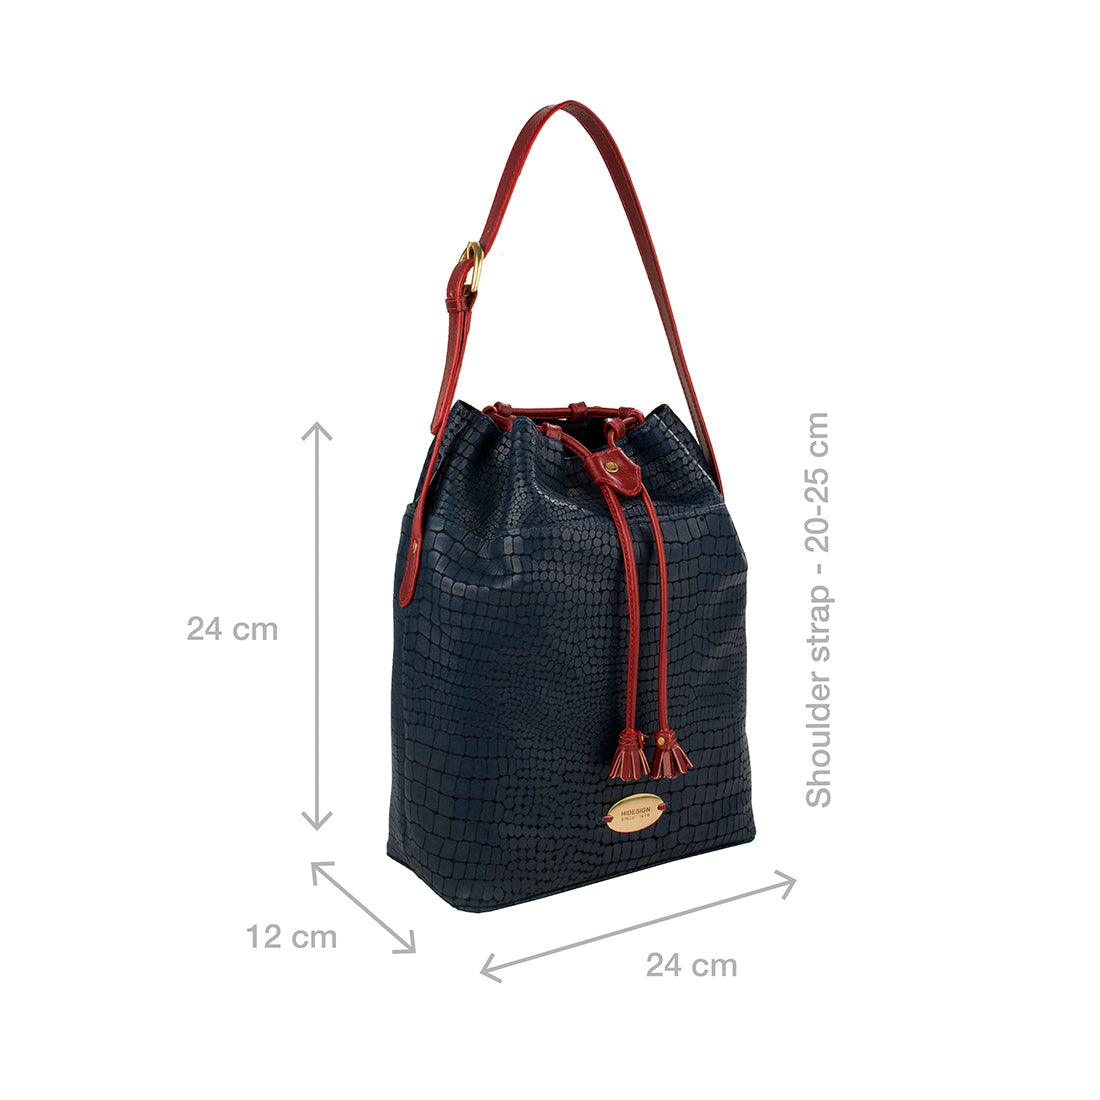 Buy HIDESIGN Women Yellow Handbag Yellow Online @ Best Price in India |  Flipkart.com